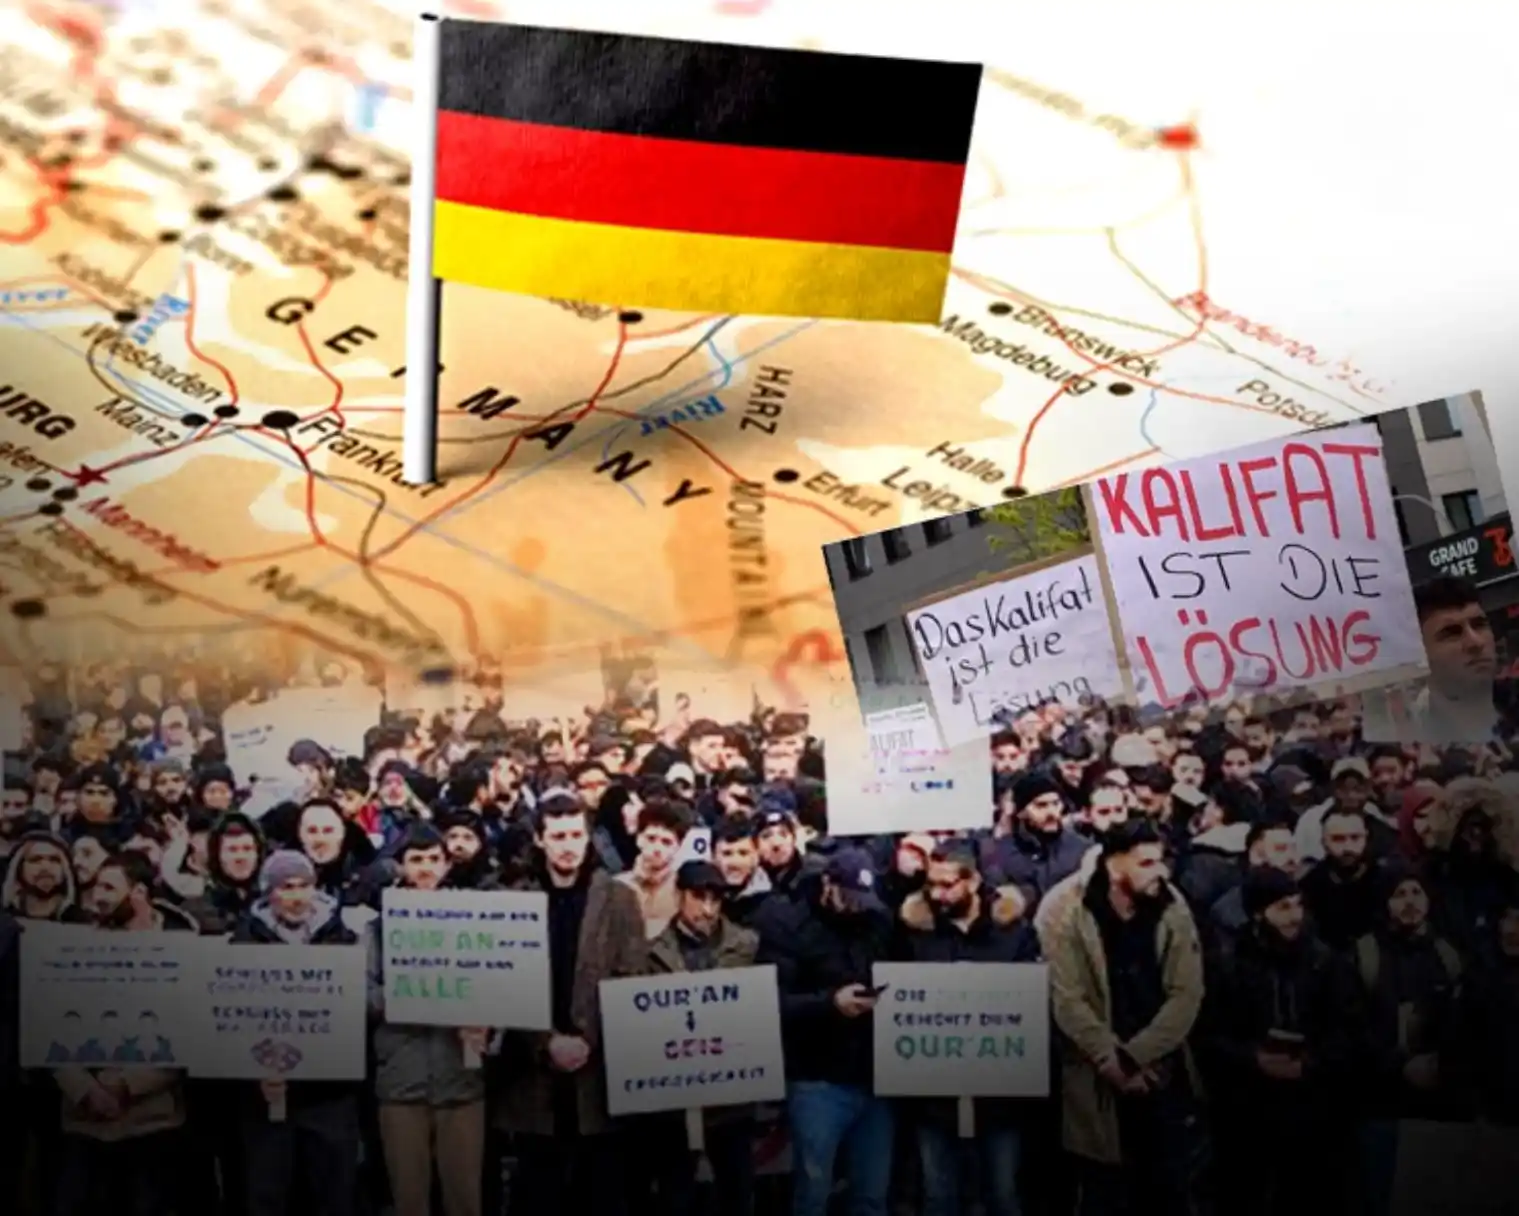 Demand to make Germany an Islamic Caliphate